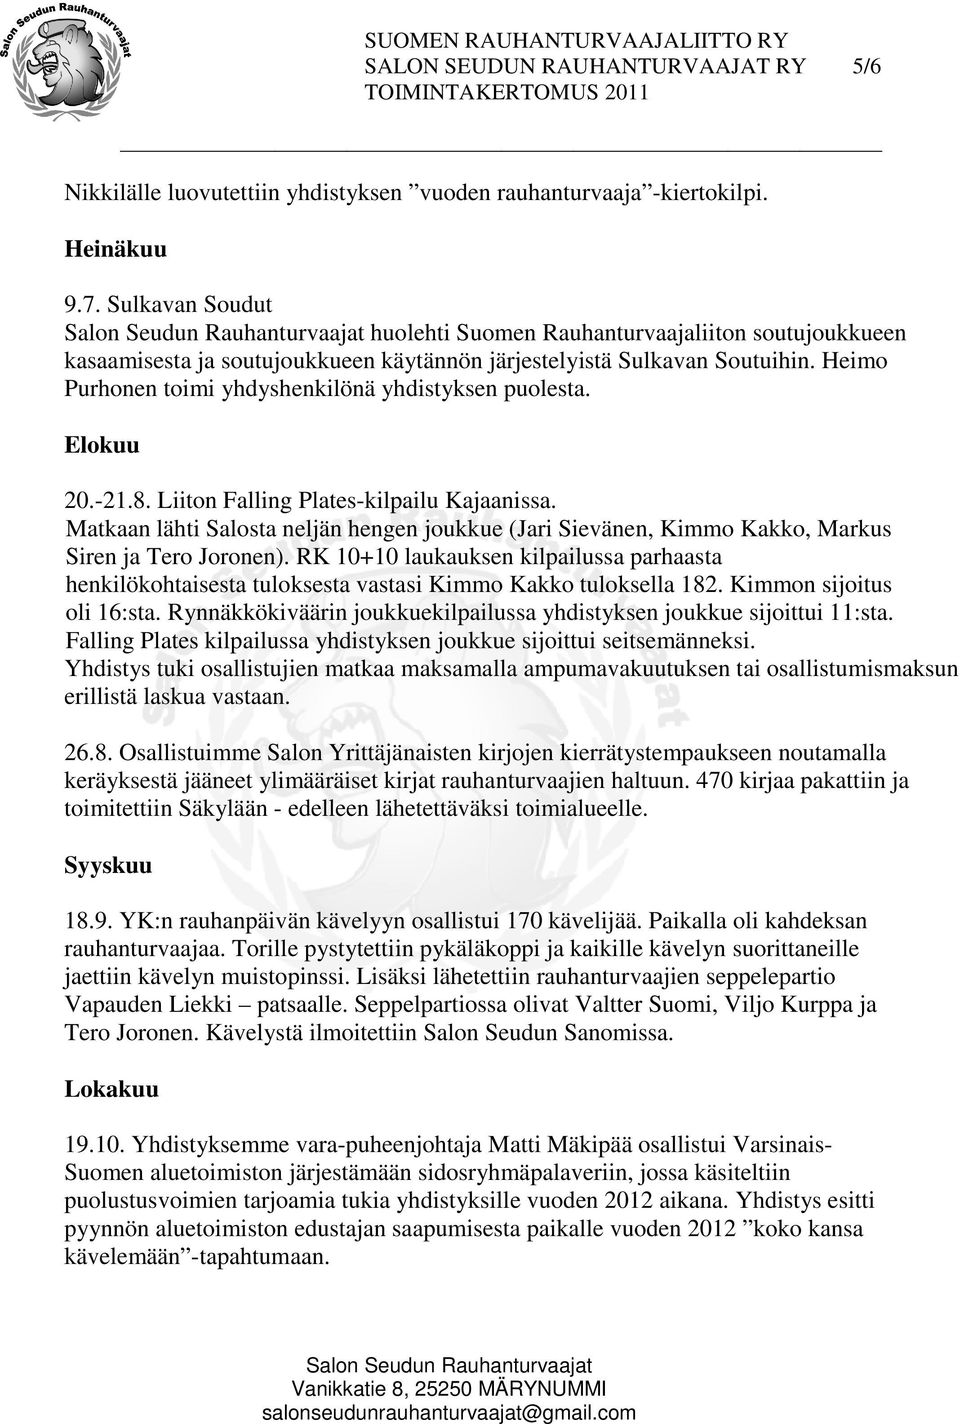 Heimo Purhonen toimi yhdyshenkilönä yhdistyksen puolesta. Elokuu 20.-21.8. Liiton Falling Plates-kilpailu Kajaanissa.